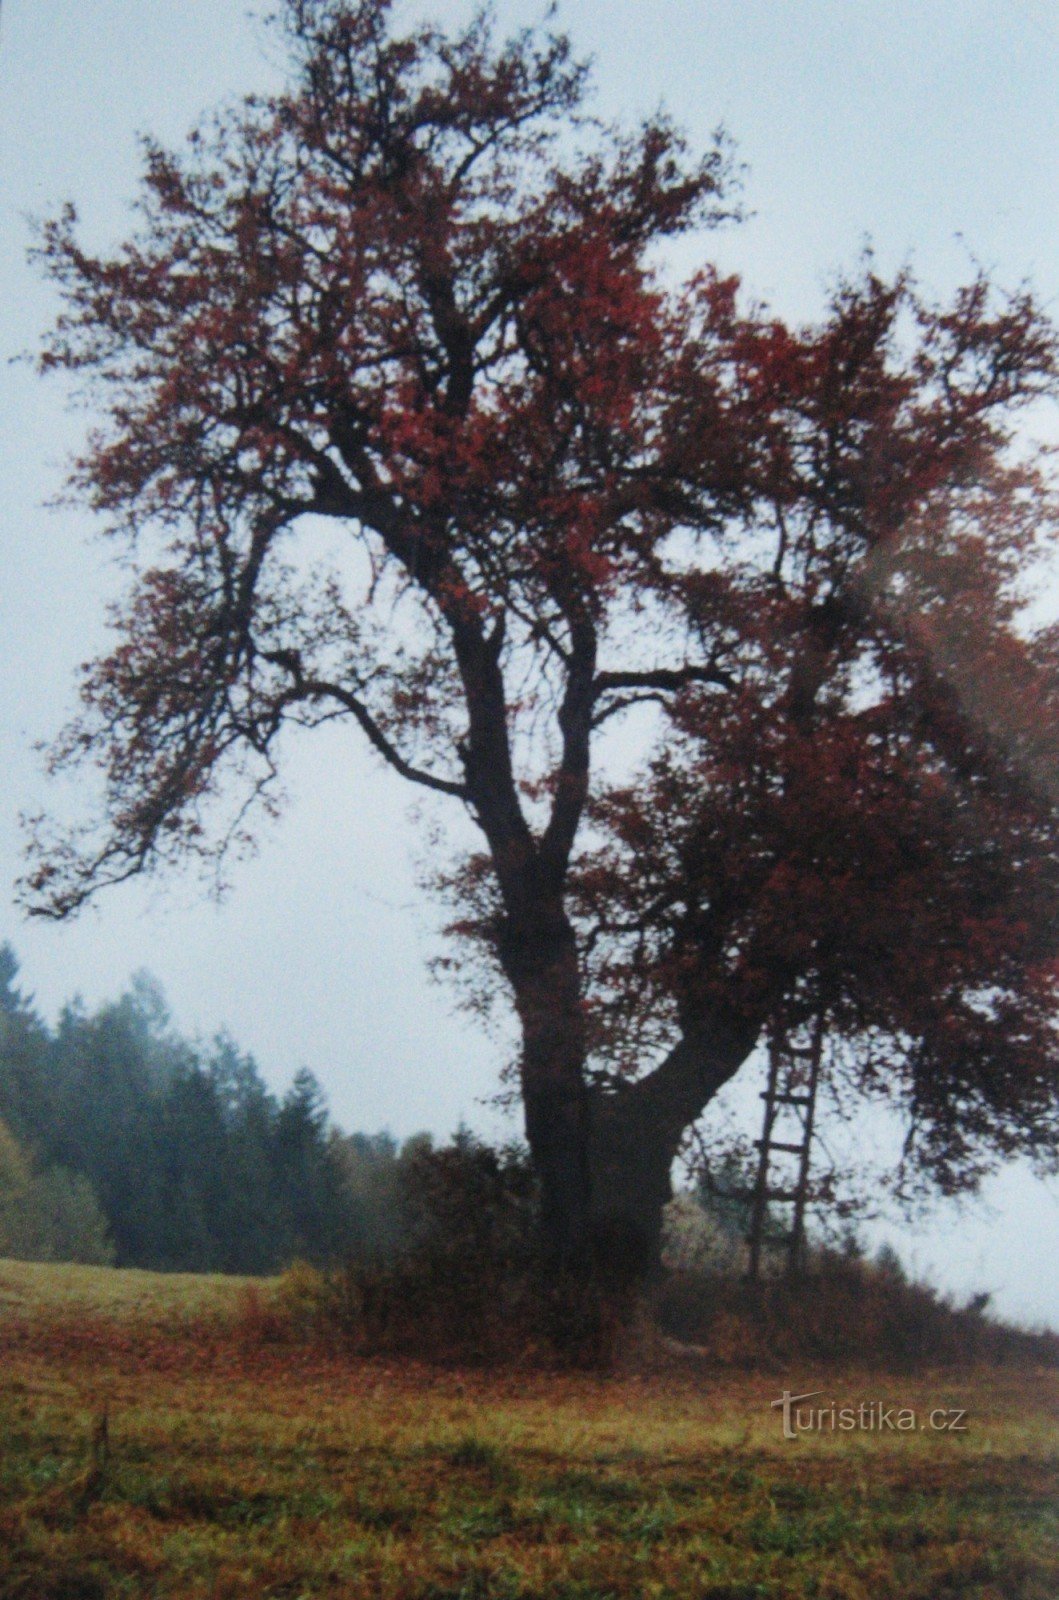 Around Držková (2004)